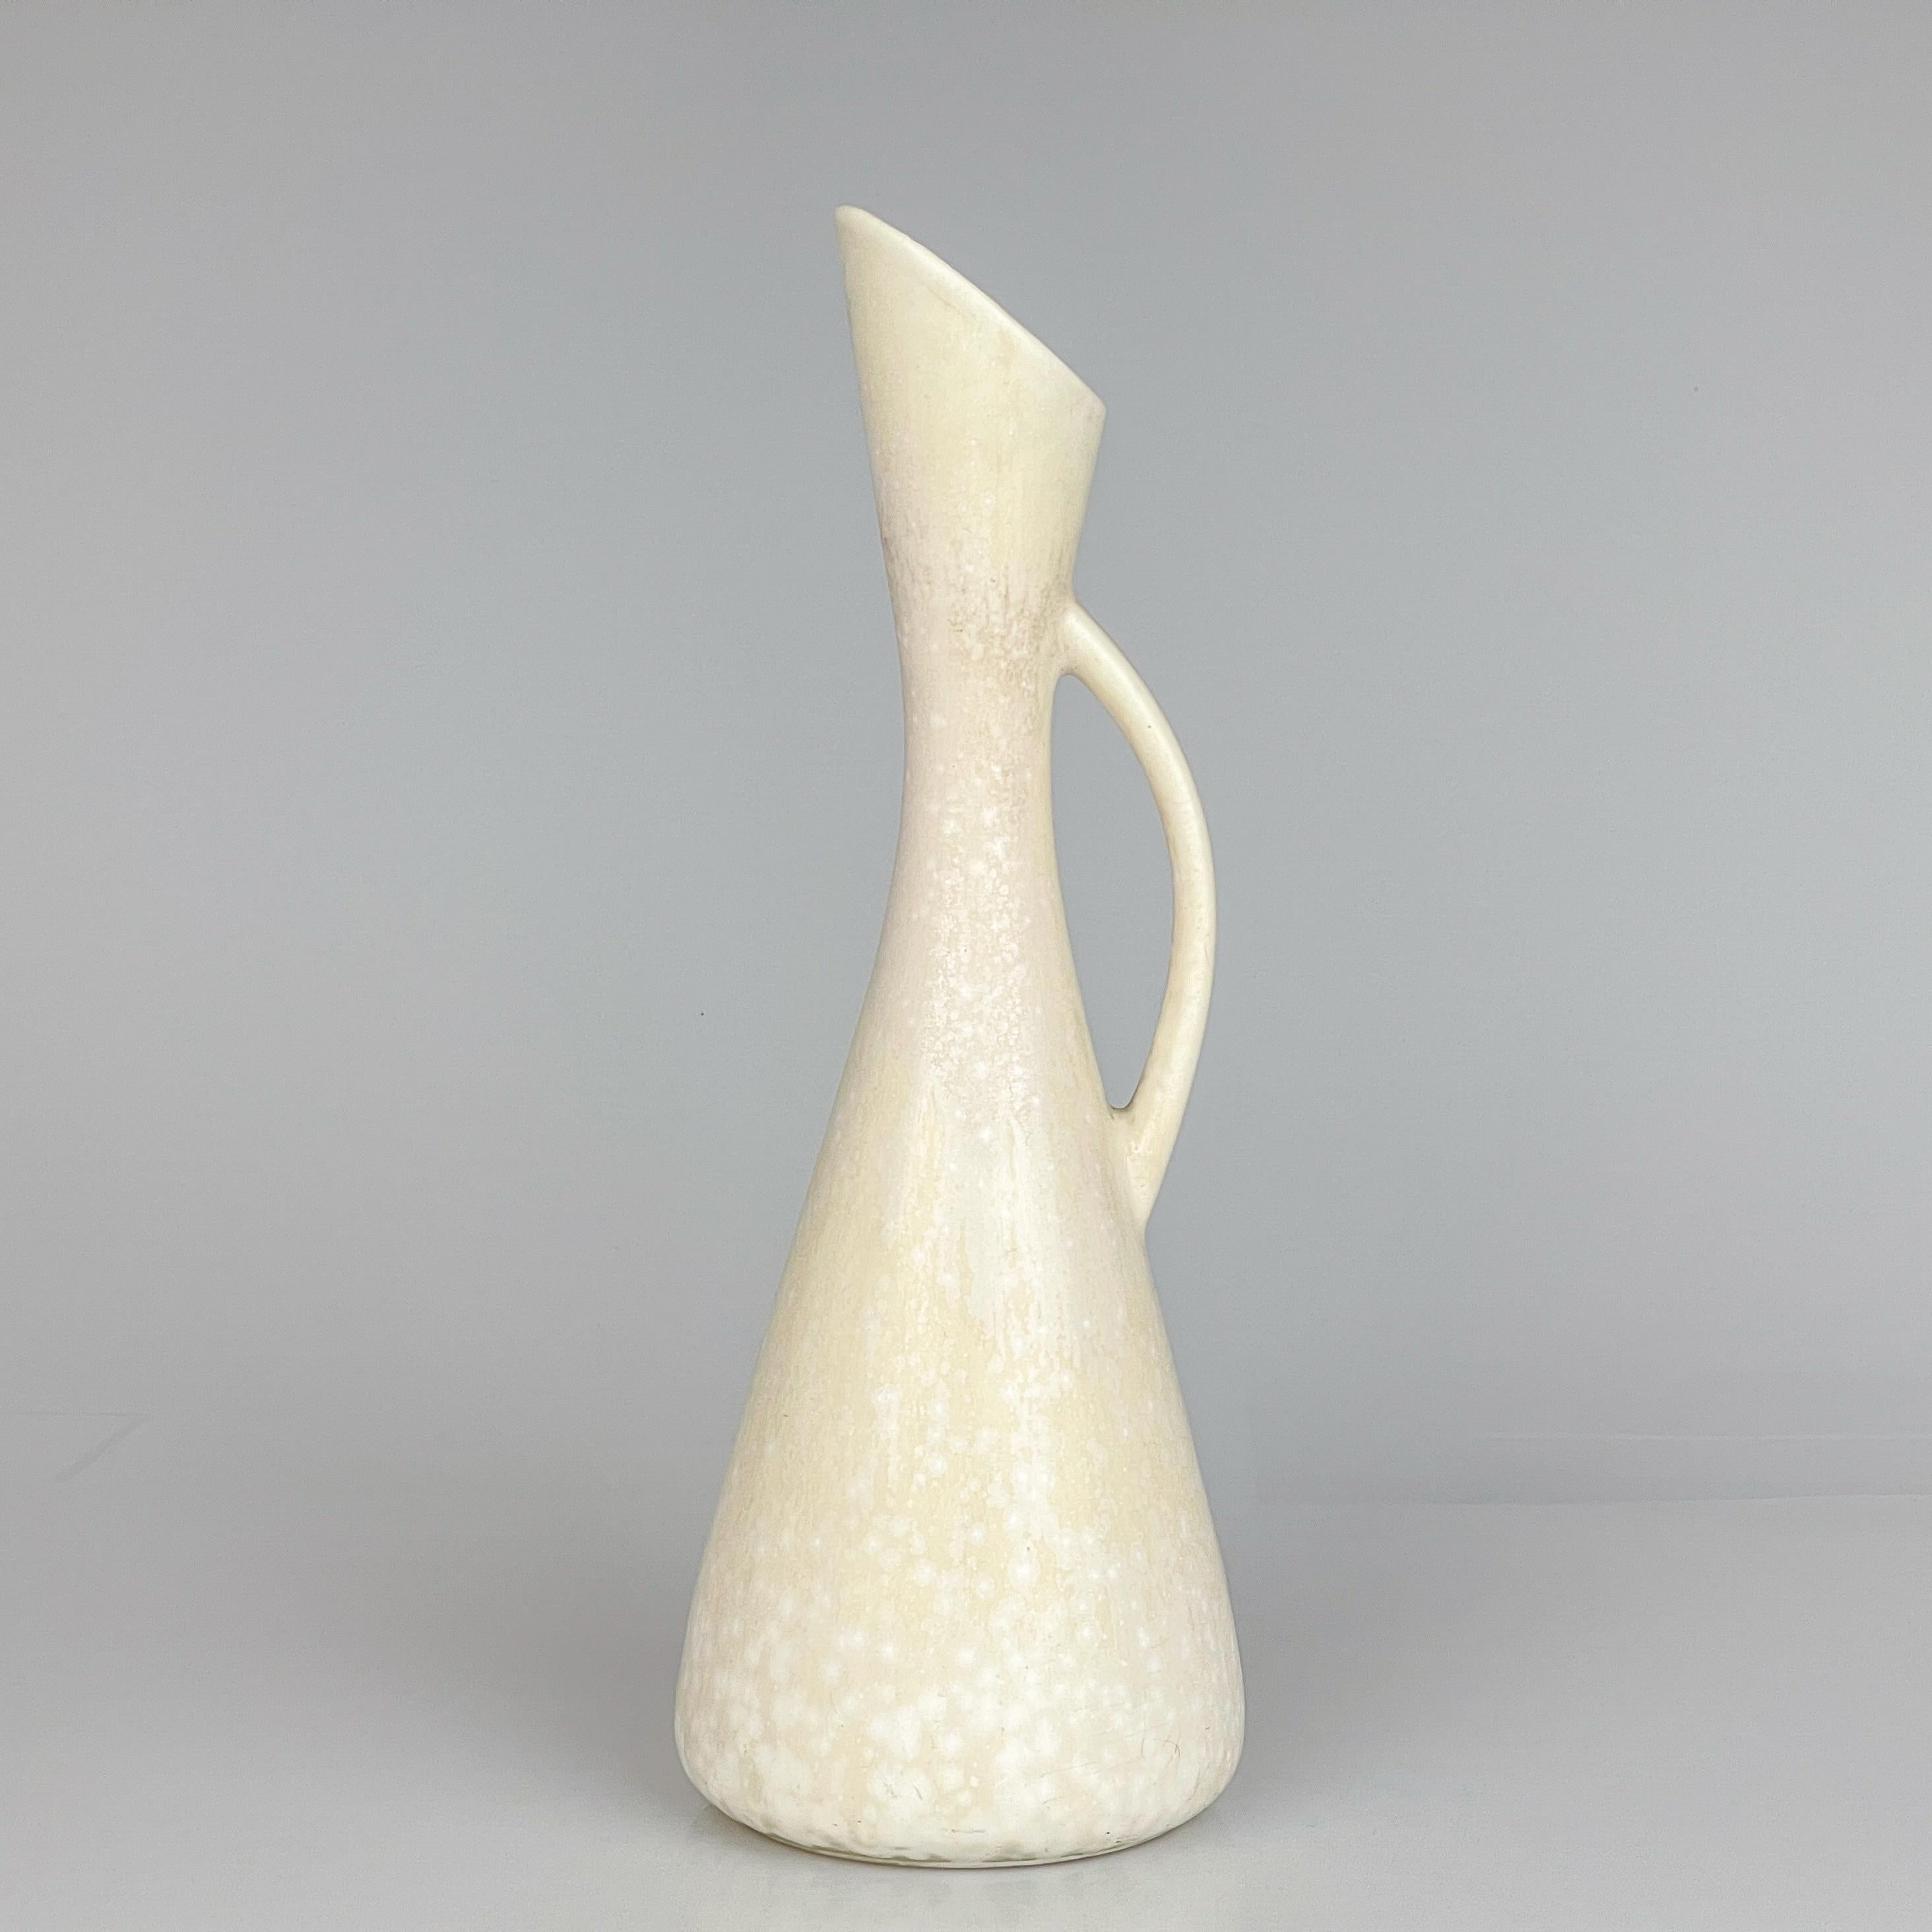 Gunnar Nylund, vase/pichet en grès Rörstrand, Suède, vers 1950

Description
Vase / pichet en grès, modèle AUD, recouvert d'une belle glaçure blanche 